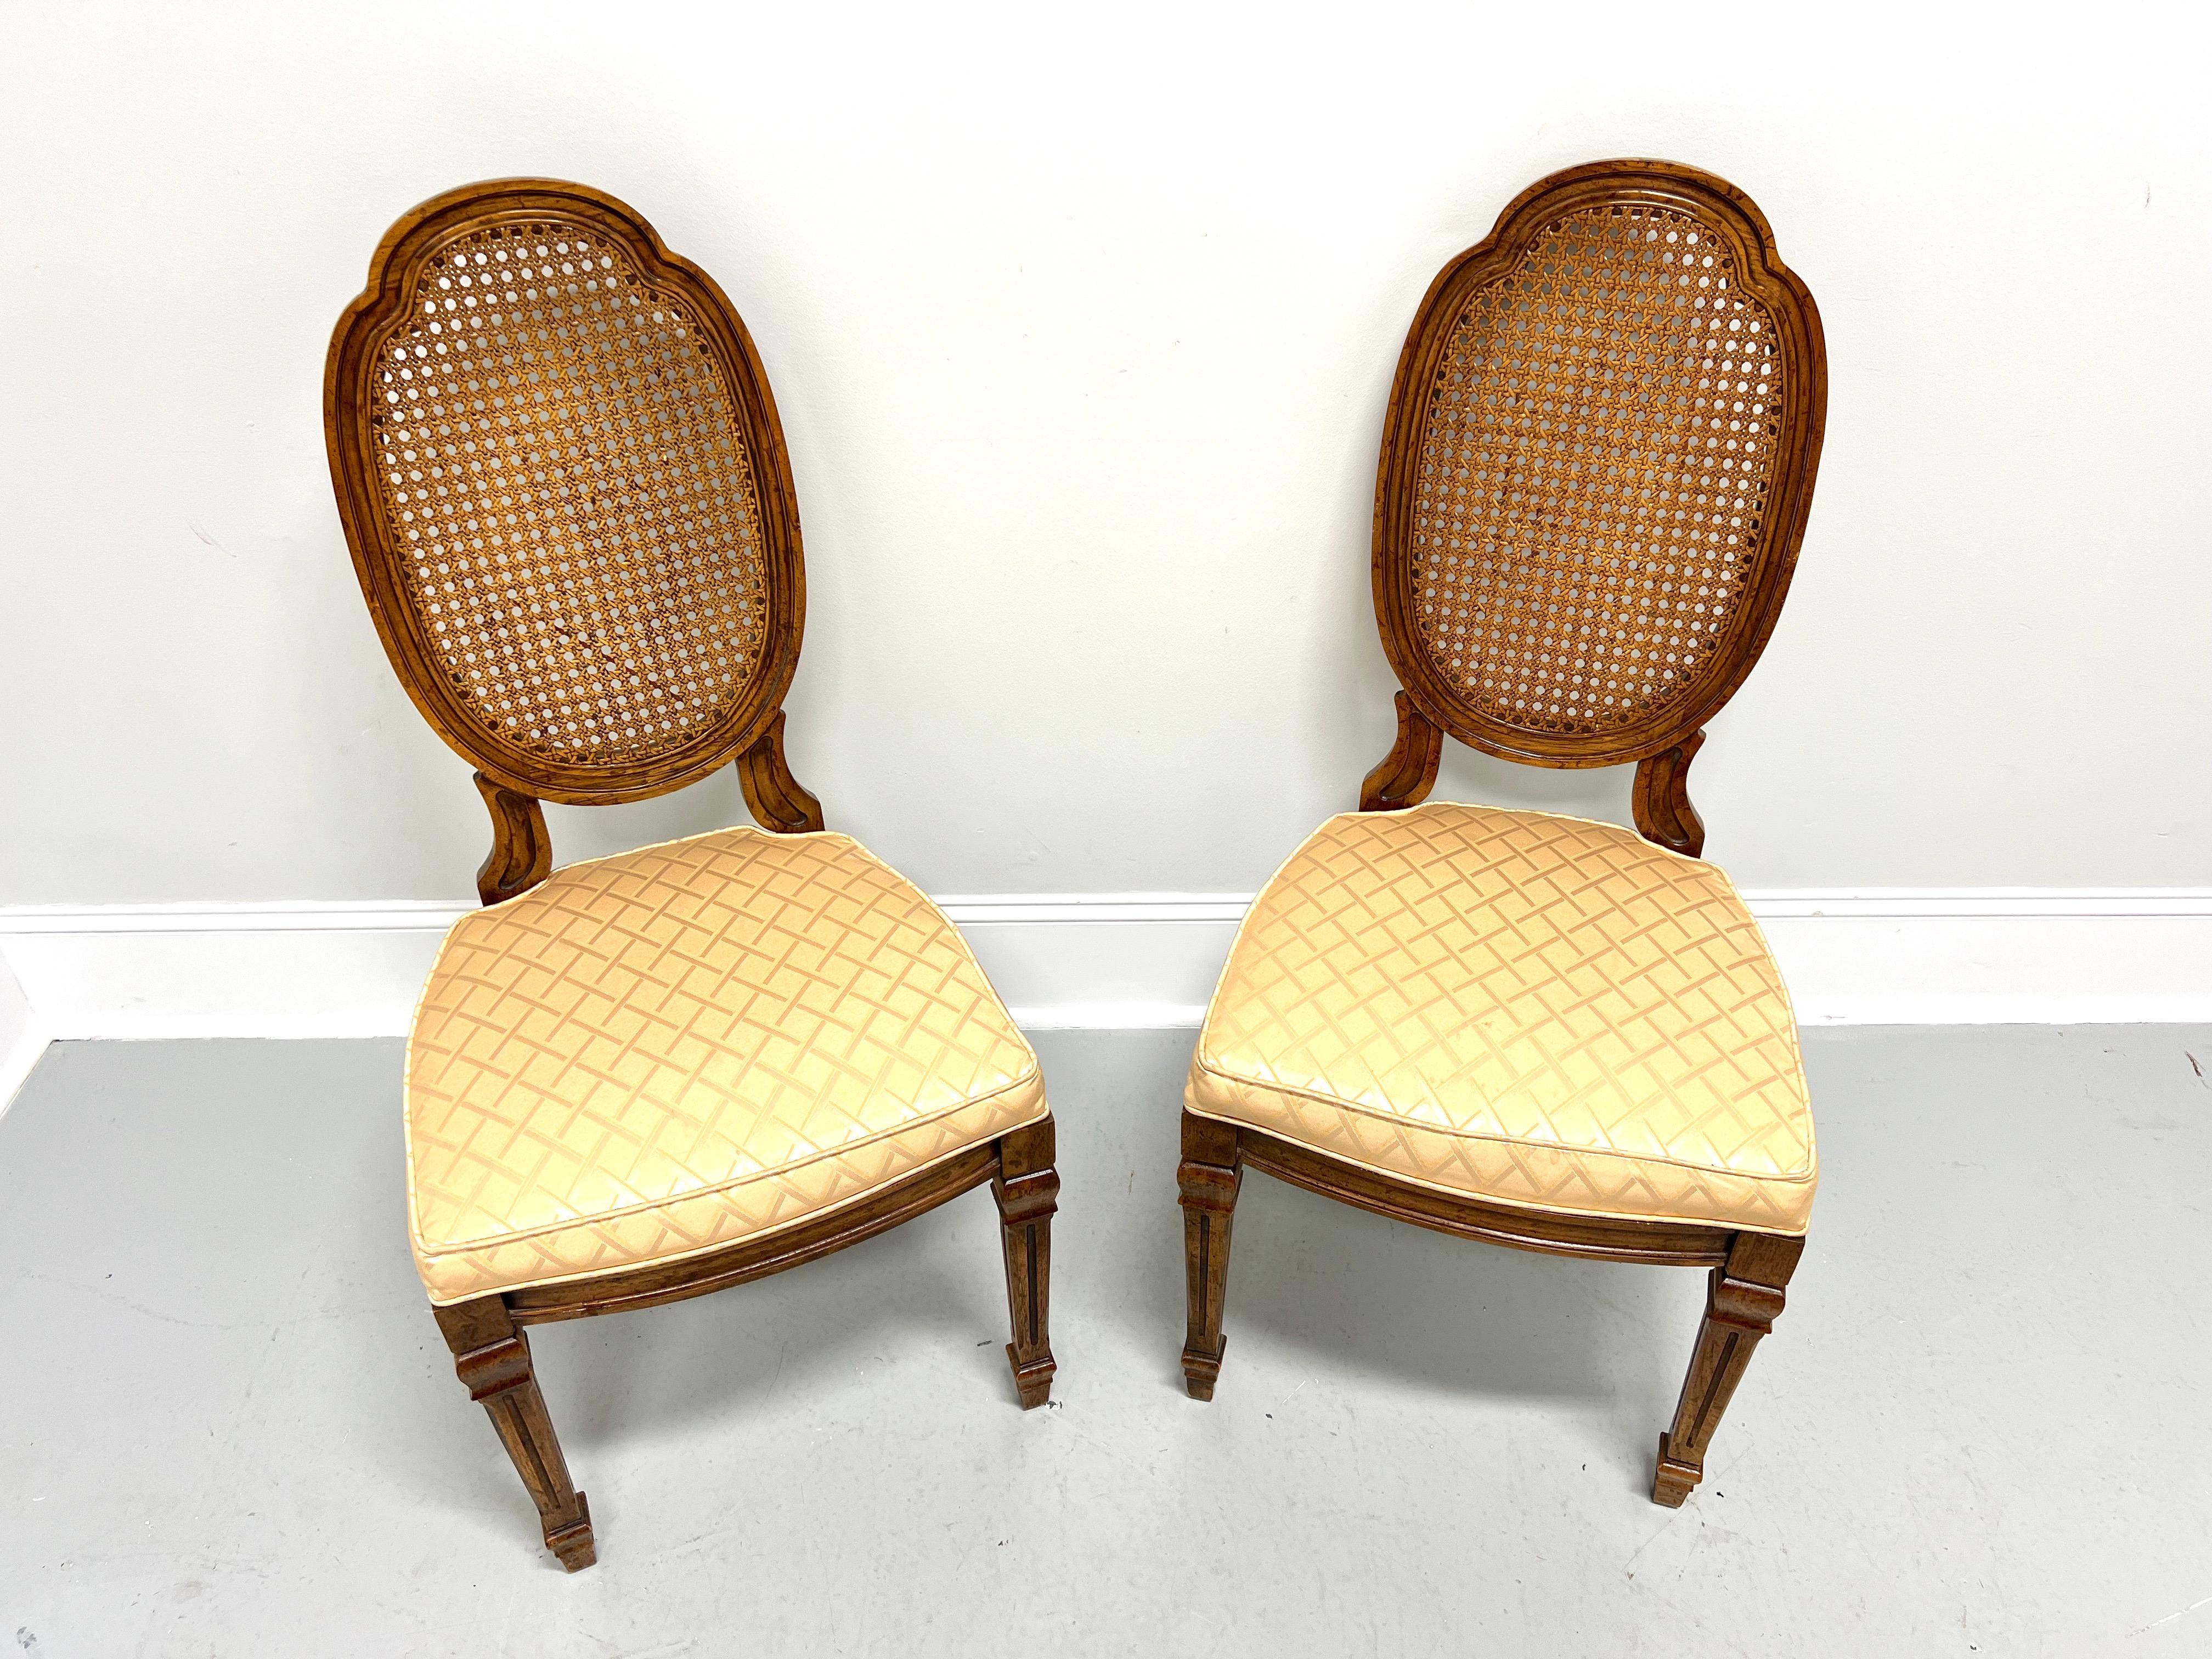 Une paire de chaises d'appoint de style Louis XVI de style provincial français par Drexel Heritage. Noyer au fini légèrement vieilli, dossiers ovales sculptés en forme de bouclier, sièges rembourrés en tissu à motif de diamants de couleur dorée,